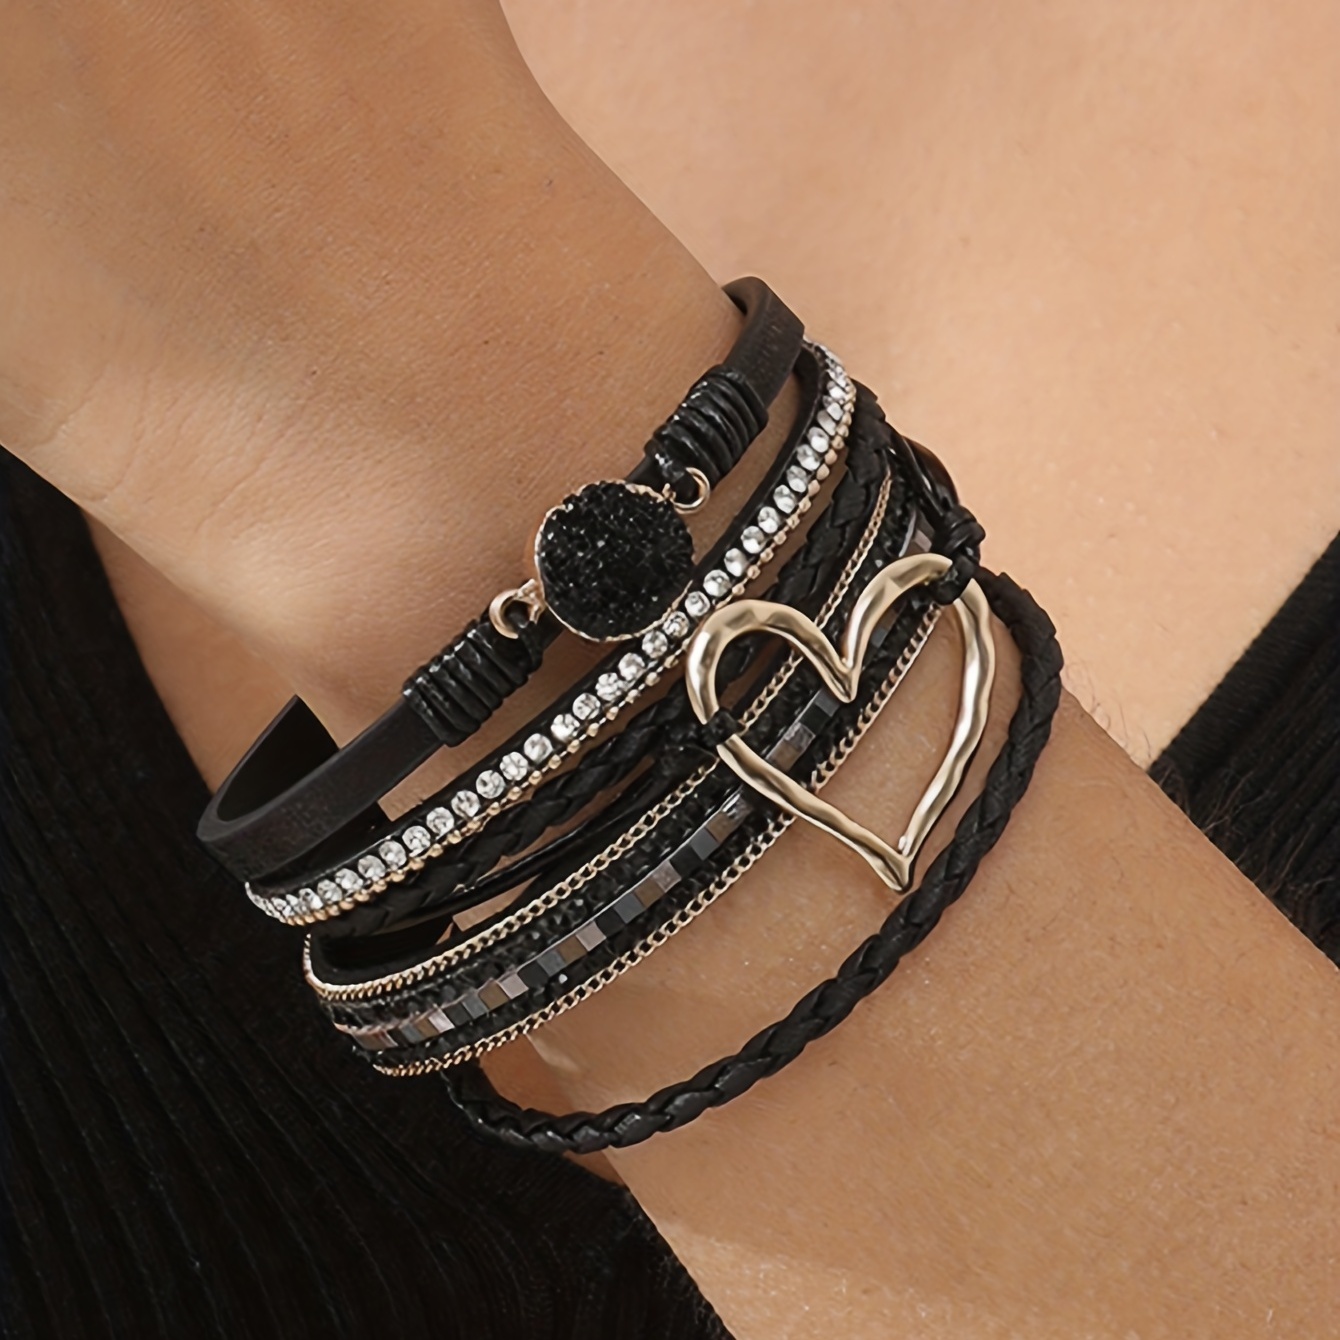 Leather bracelet for women